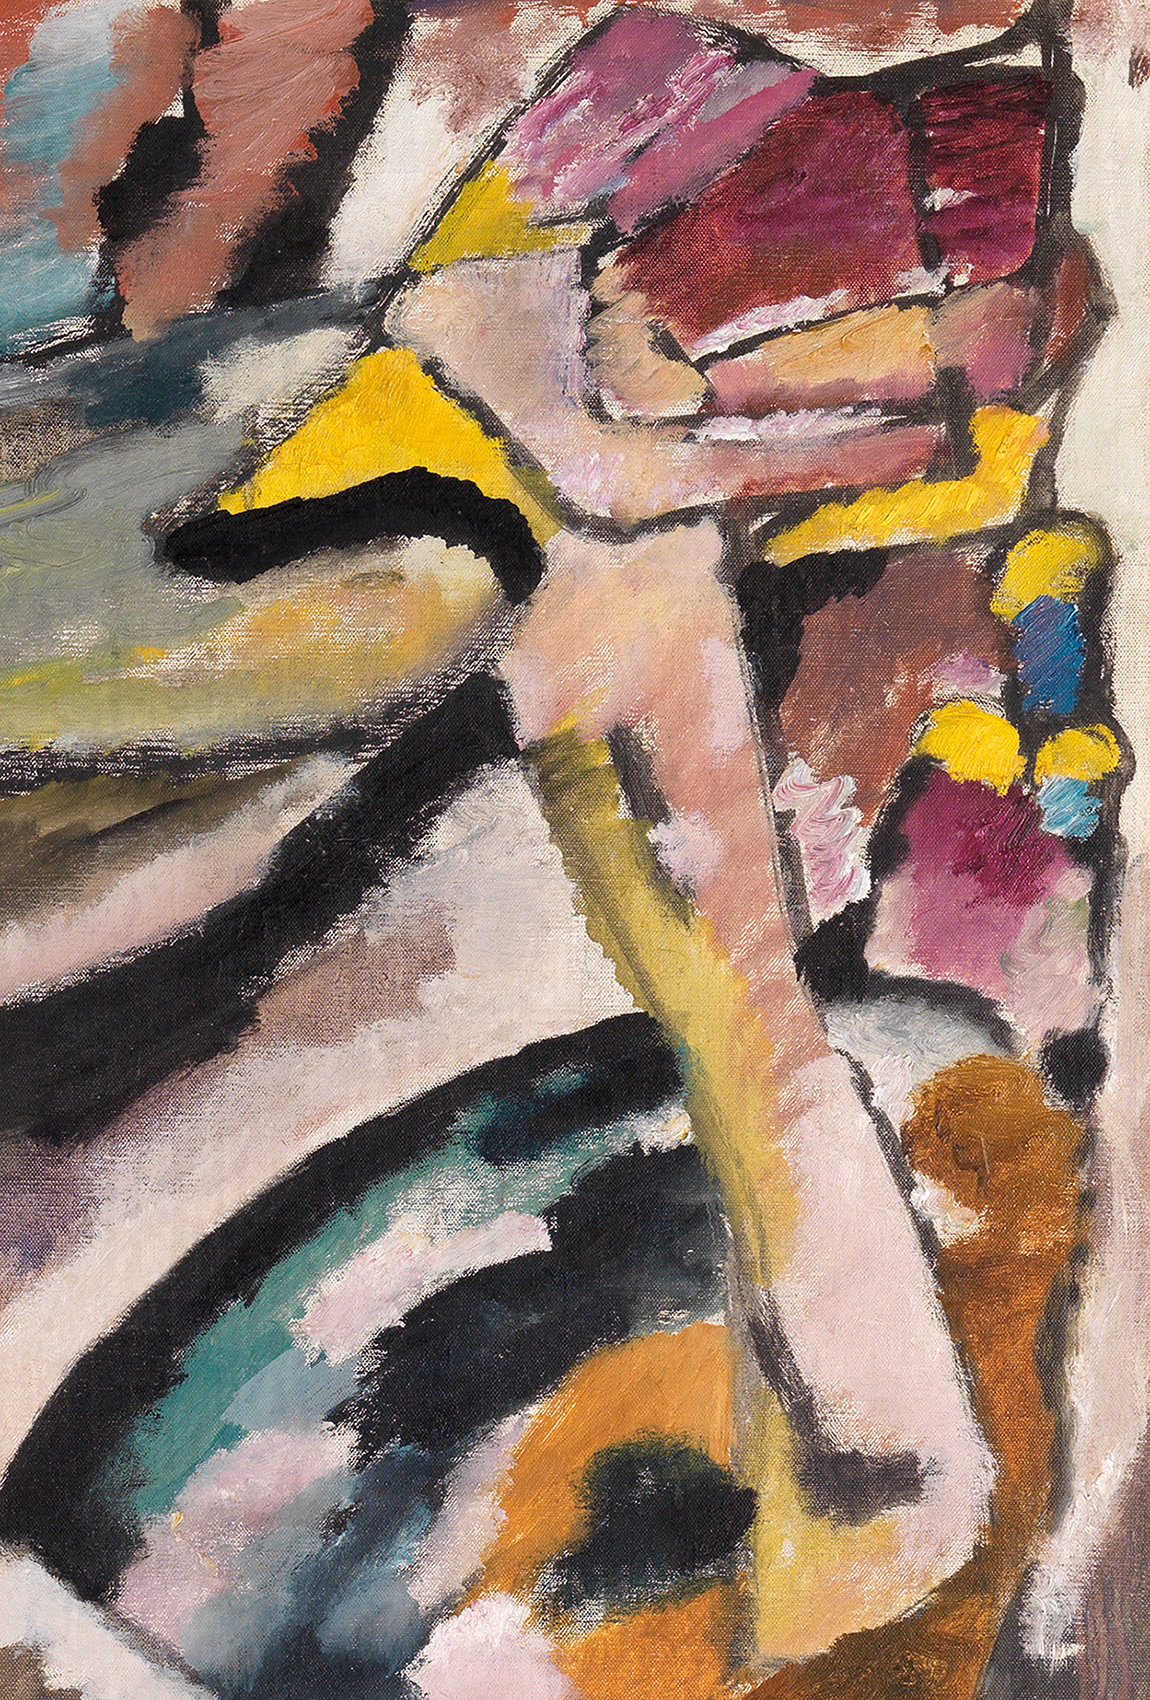 Ausschnitt aus Wassily Kandinskys Gemälde Improvisation 13, abstrahierter Reiter und Kuppelbauten.